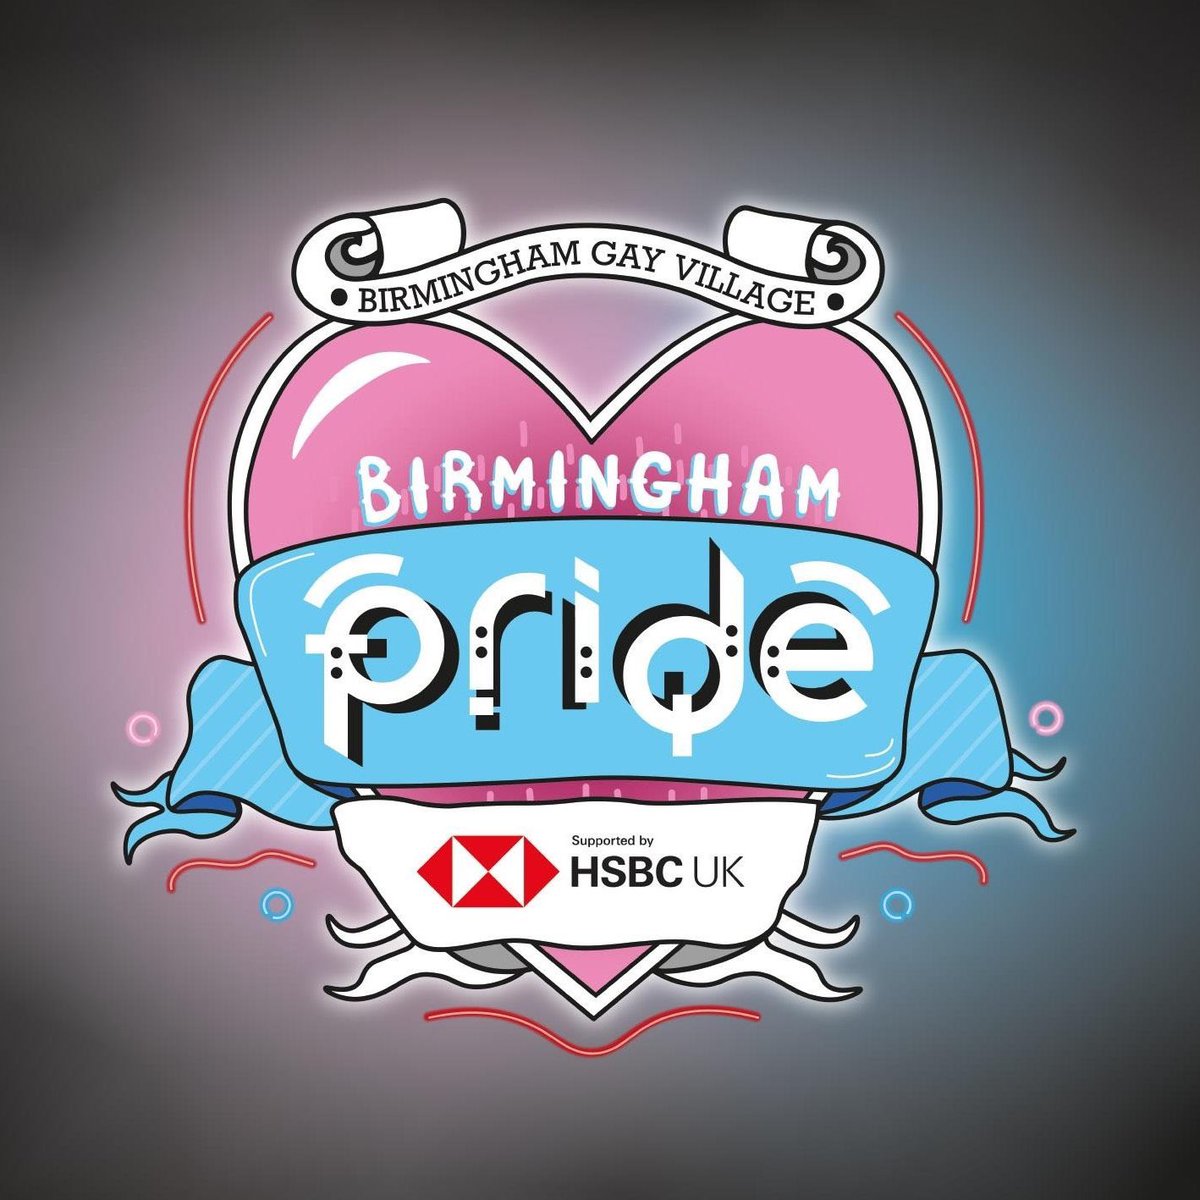 BirminghamPride tweet picture